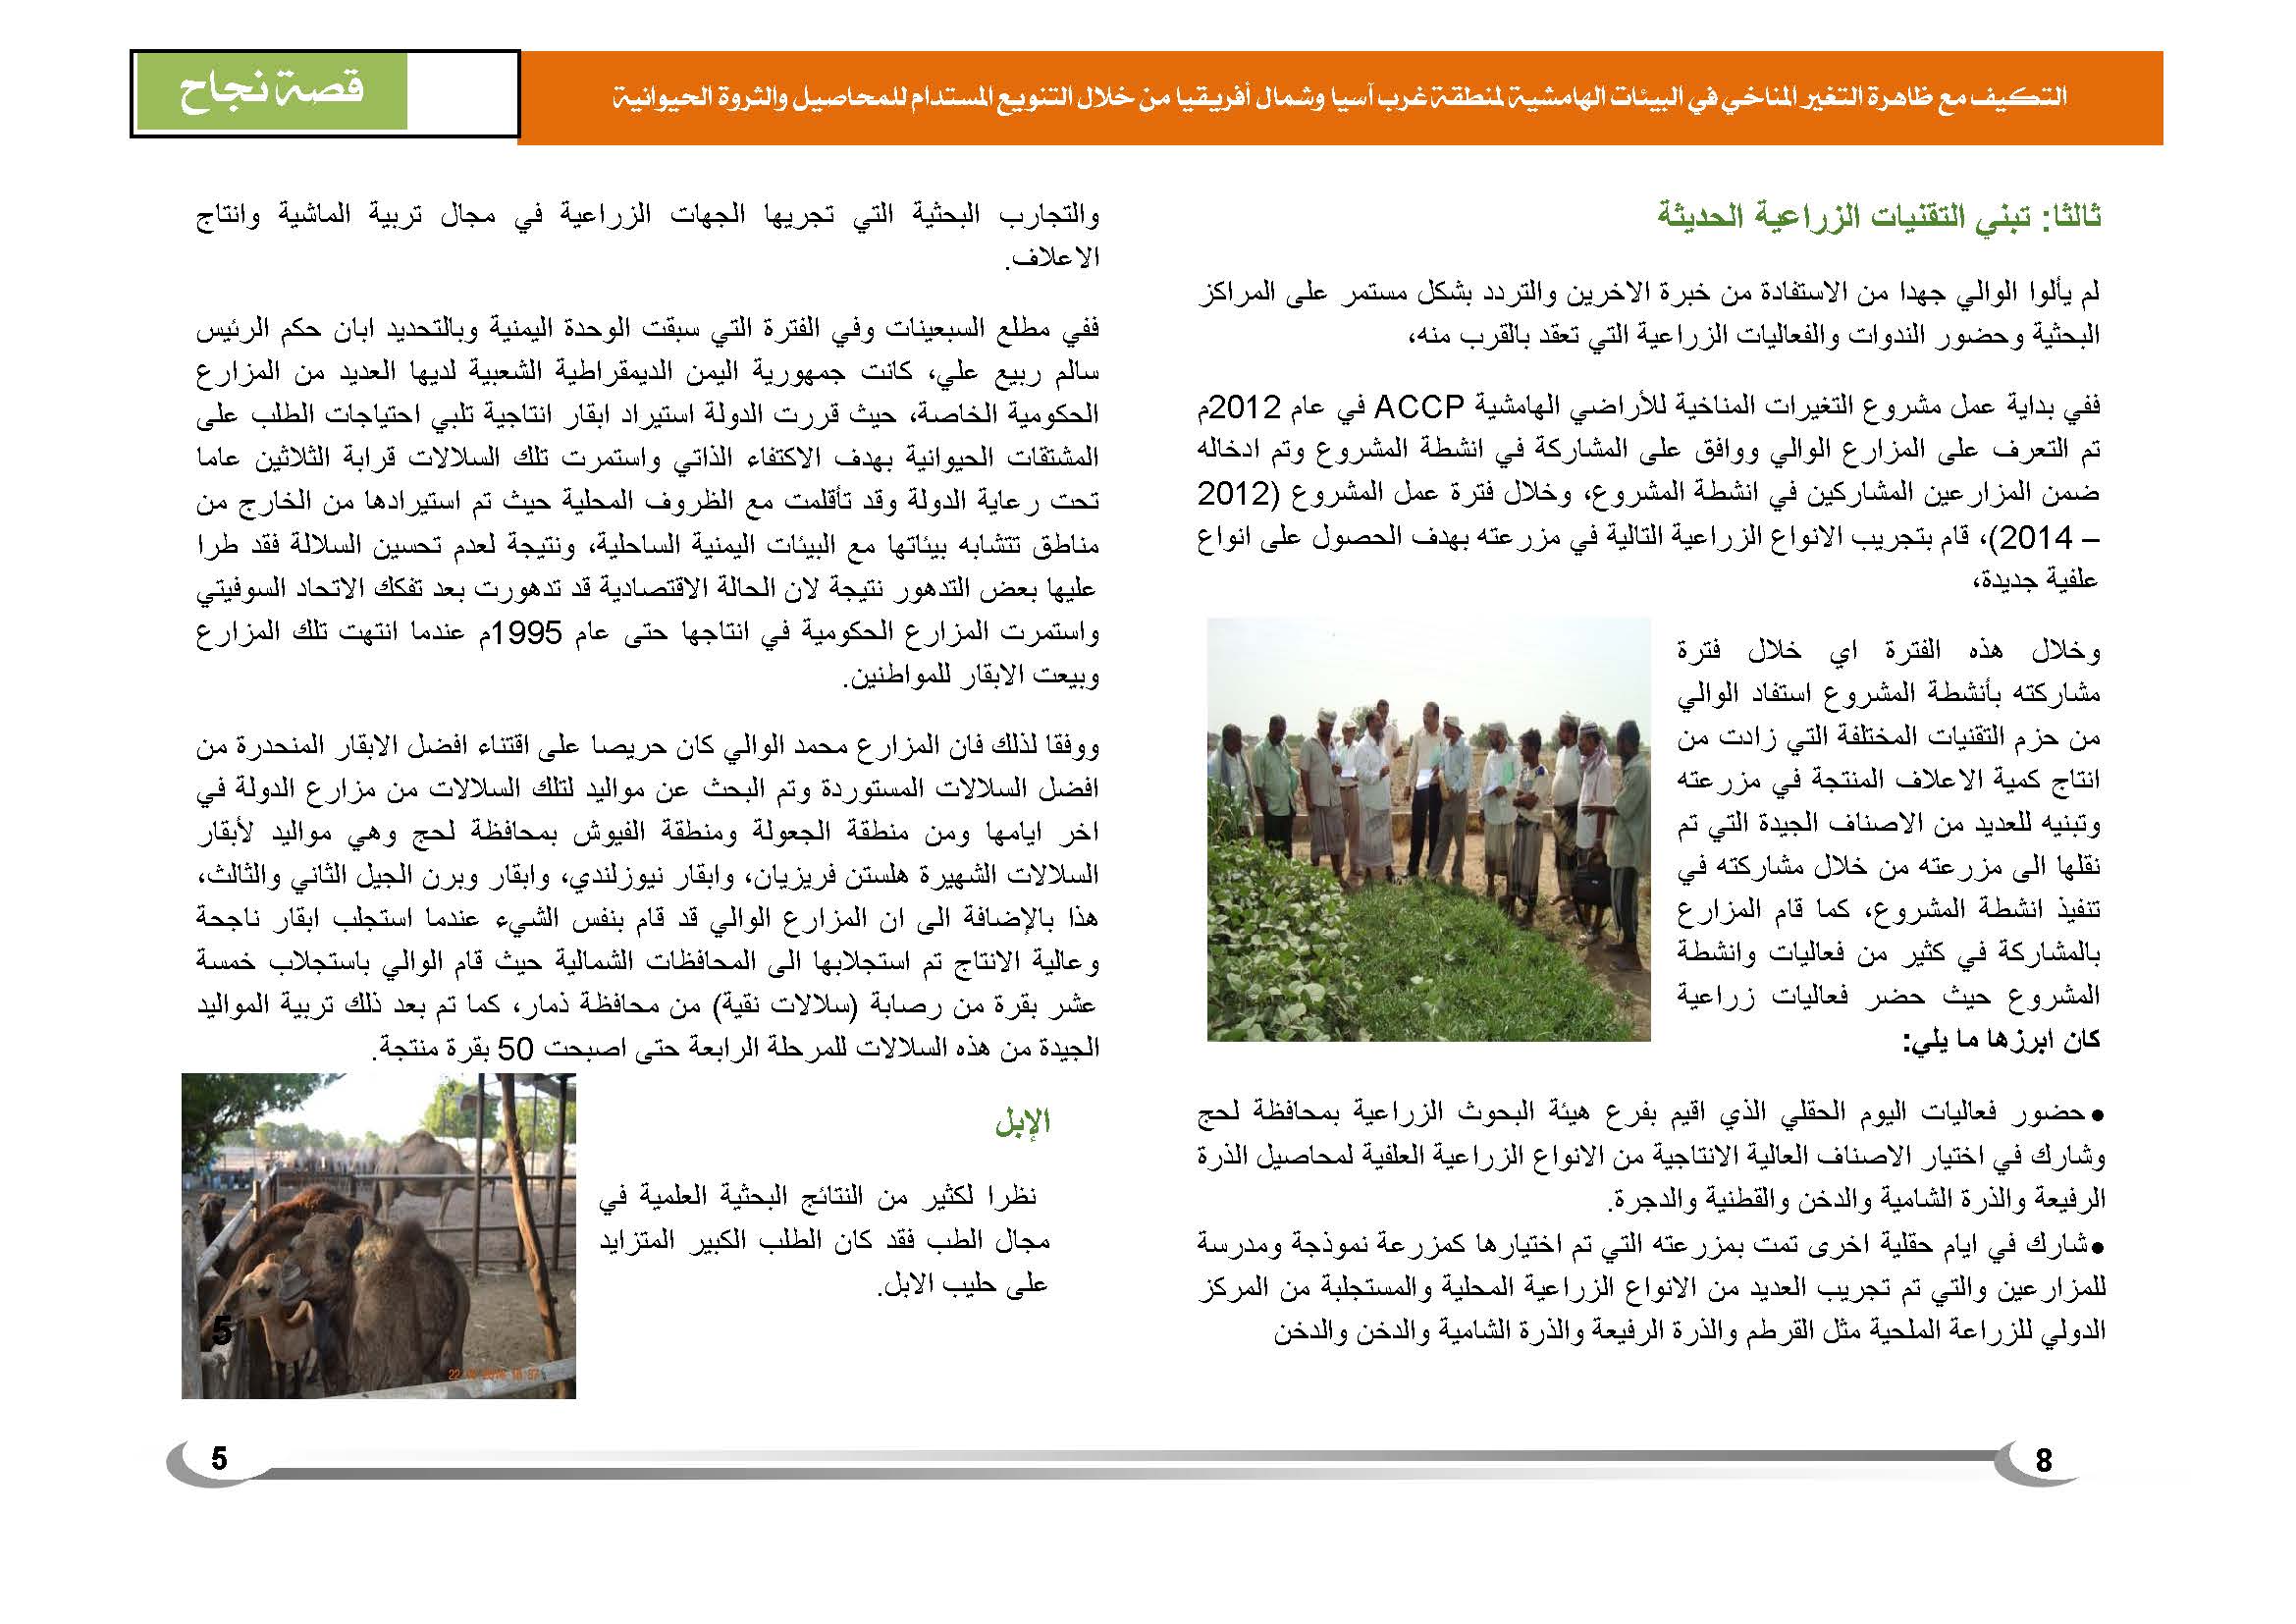 قصة نجاح في الإنتاج الزراعي في اليمن (1)_Page_6